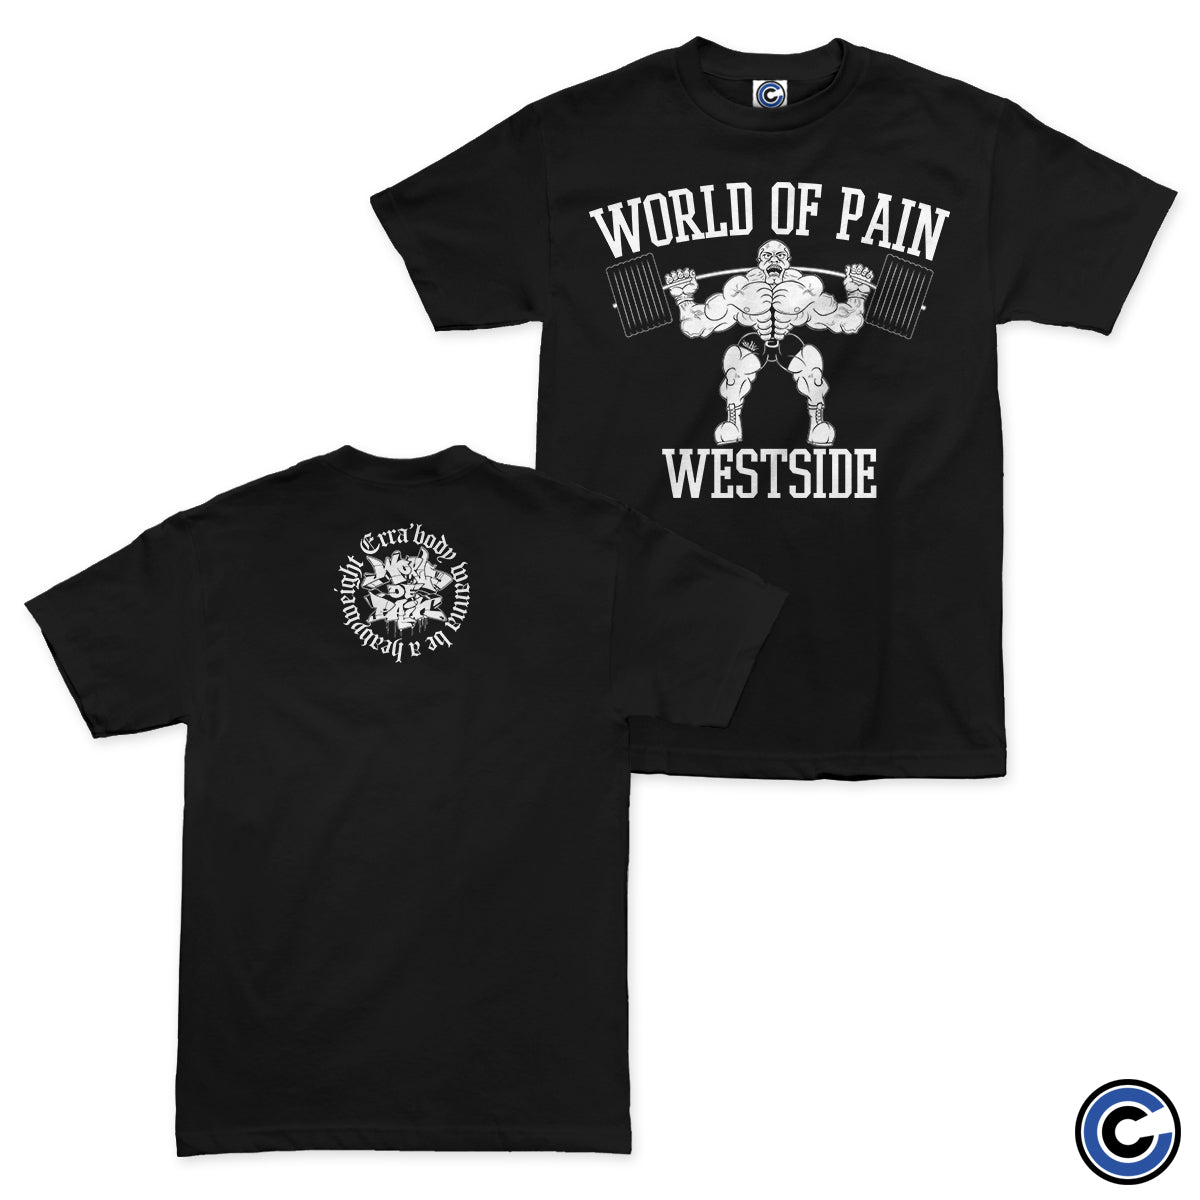 World of Pain "Westside" Shirt